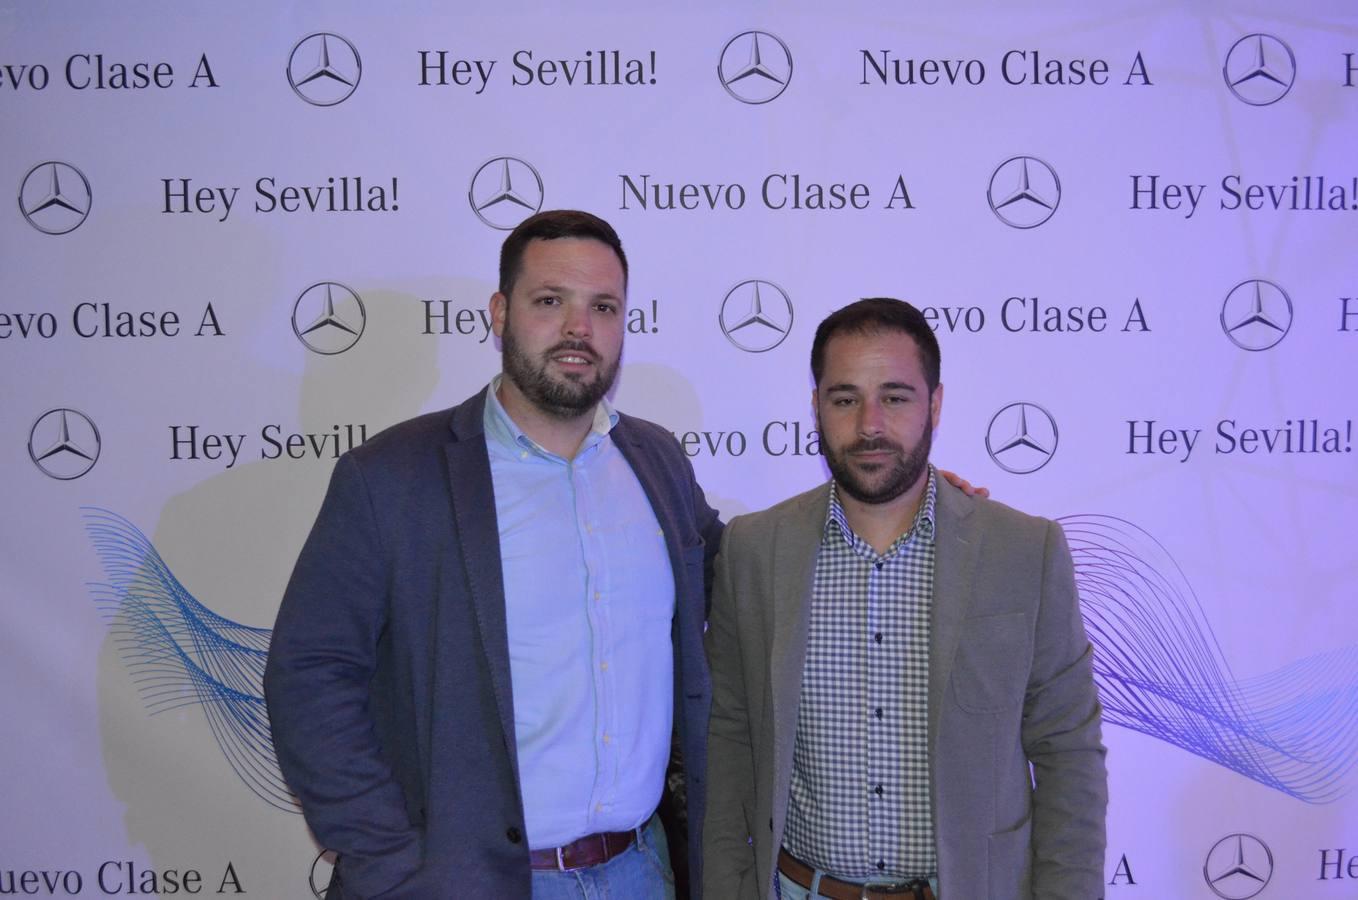 Concesur presenta el nuevo Mercedes Clase A en Sevilla